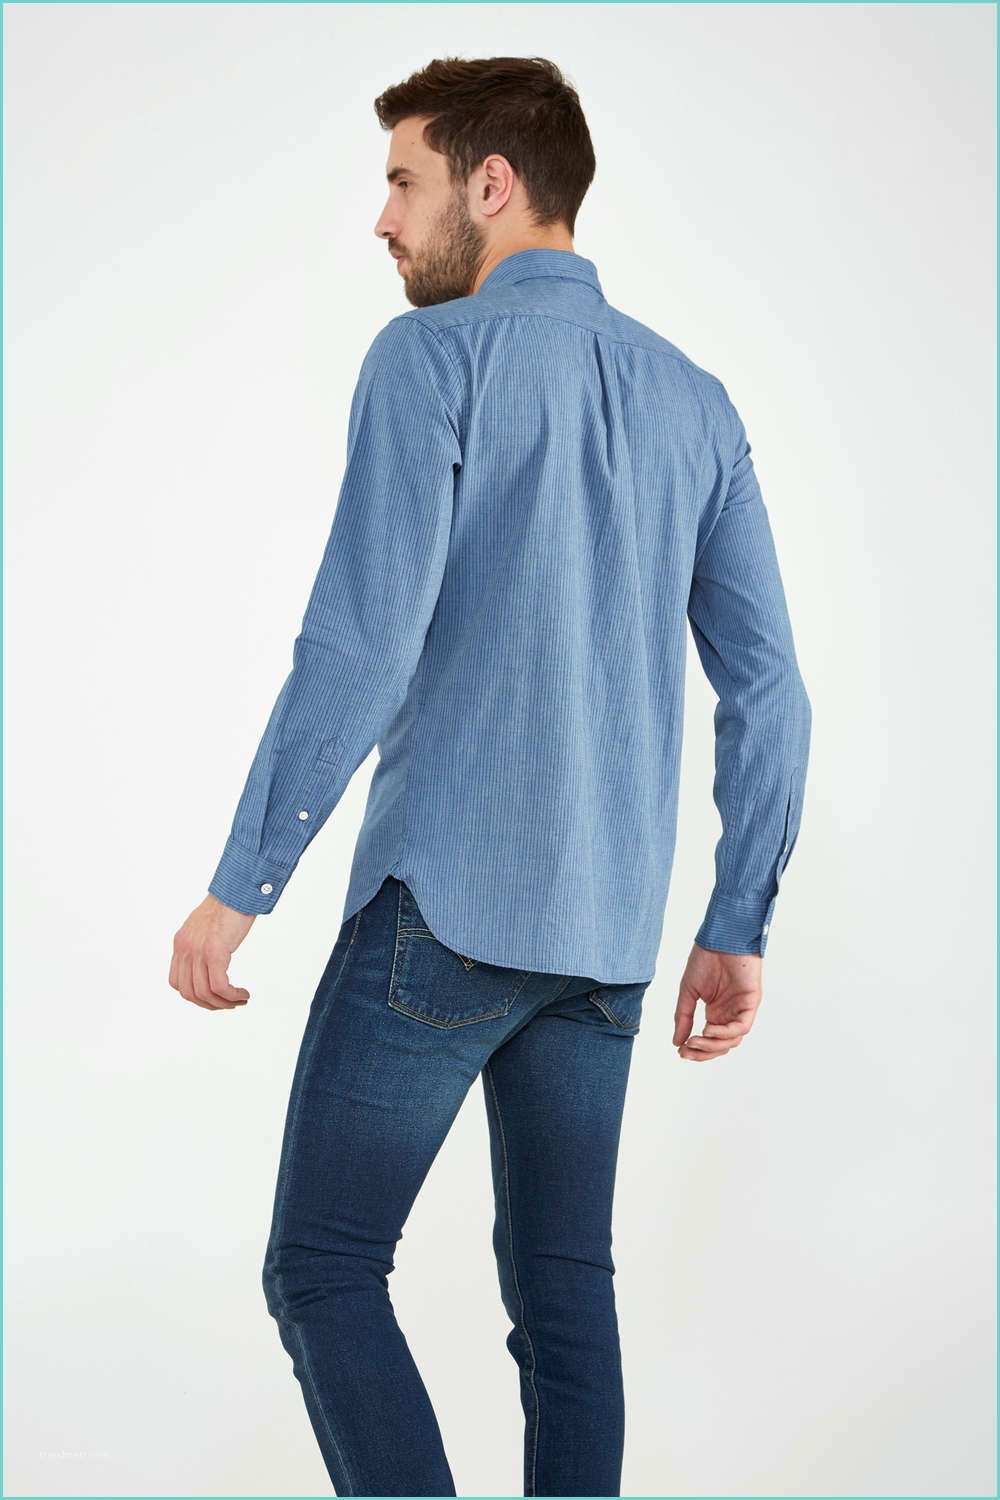 Chemise En Jean Levis Levi S Chemise En Jeans Levi S Sunset 1 Pocket Shirt Bleu